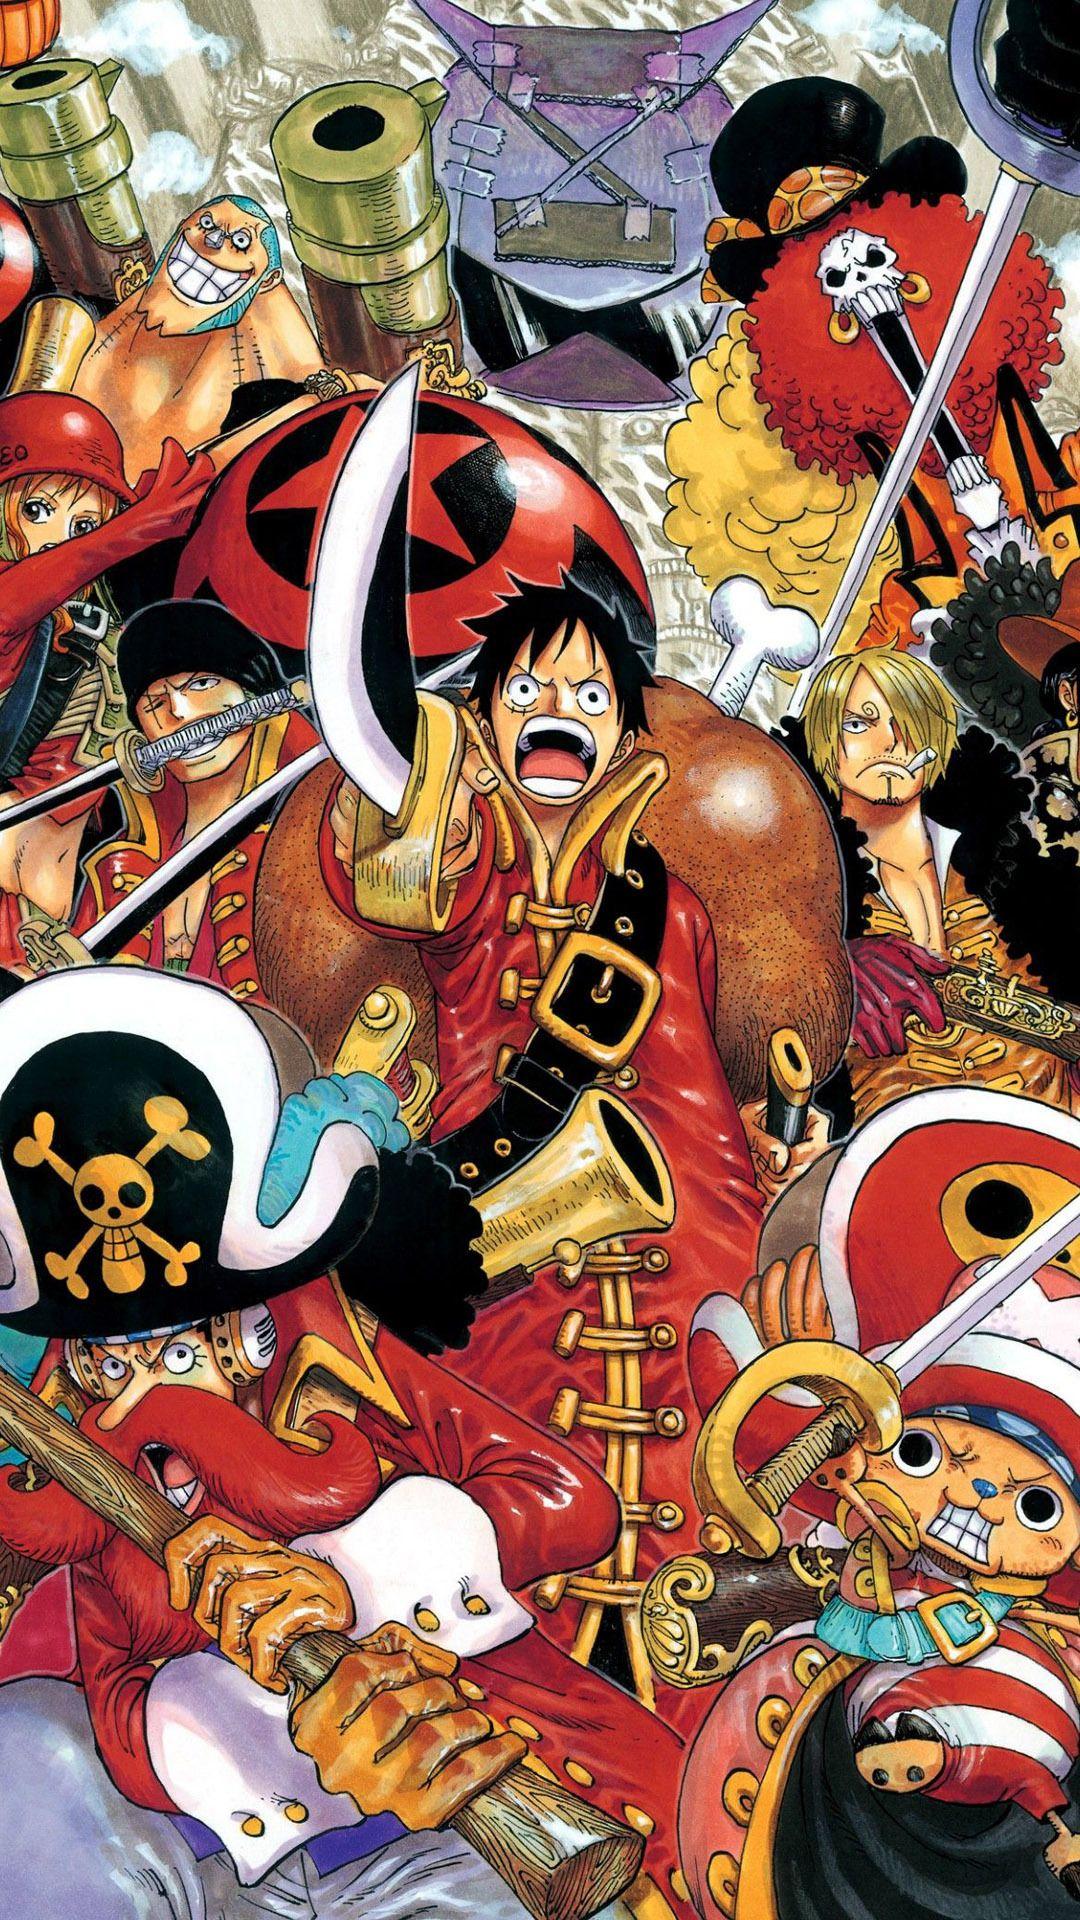 Download 70 Wallpaper One Piece Untuk Handphone terbaru 2019